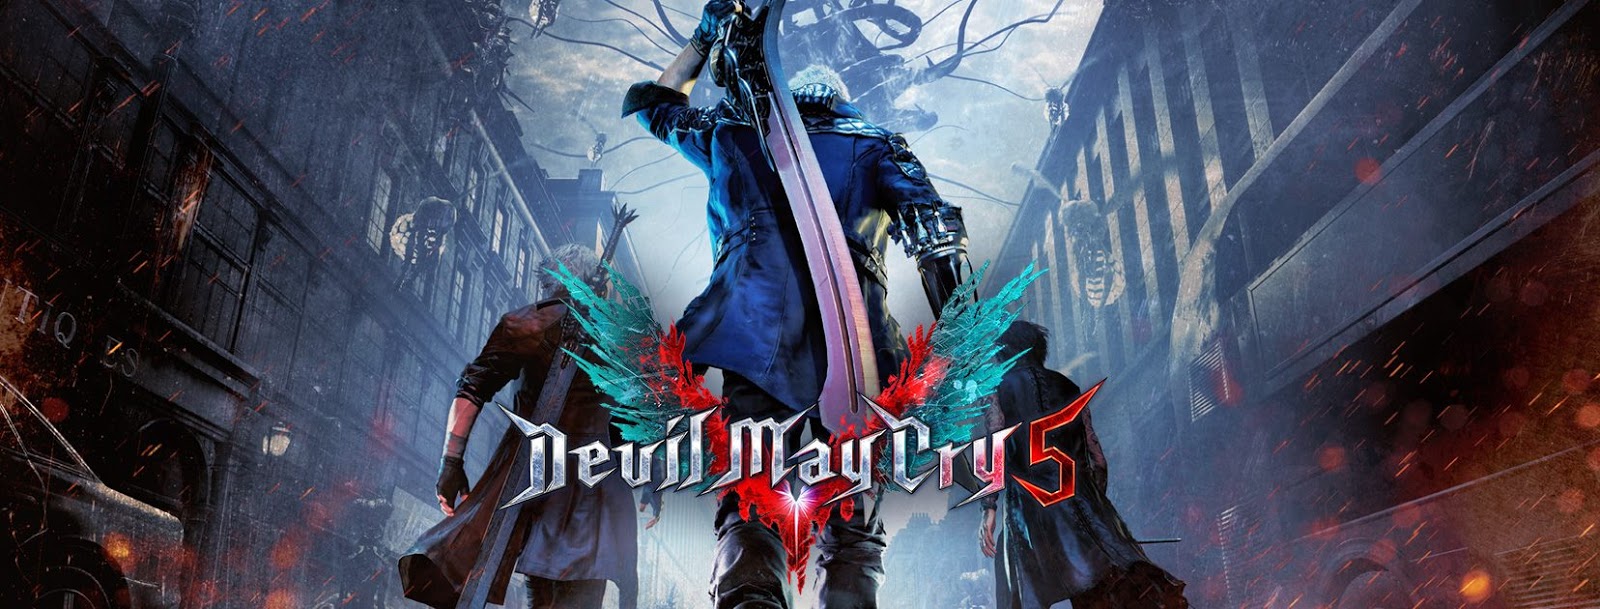 Capcom revela nova personagem em DmC Devil May Cry